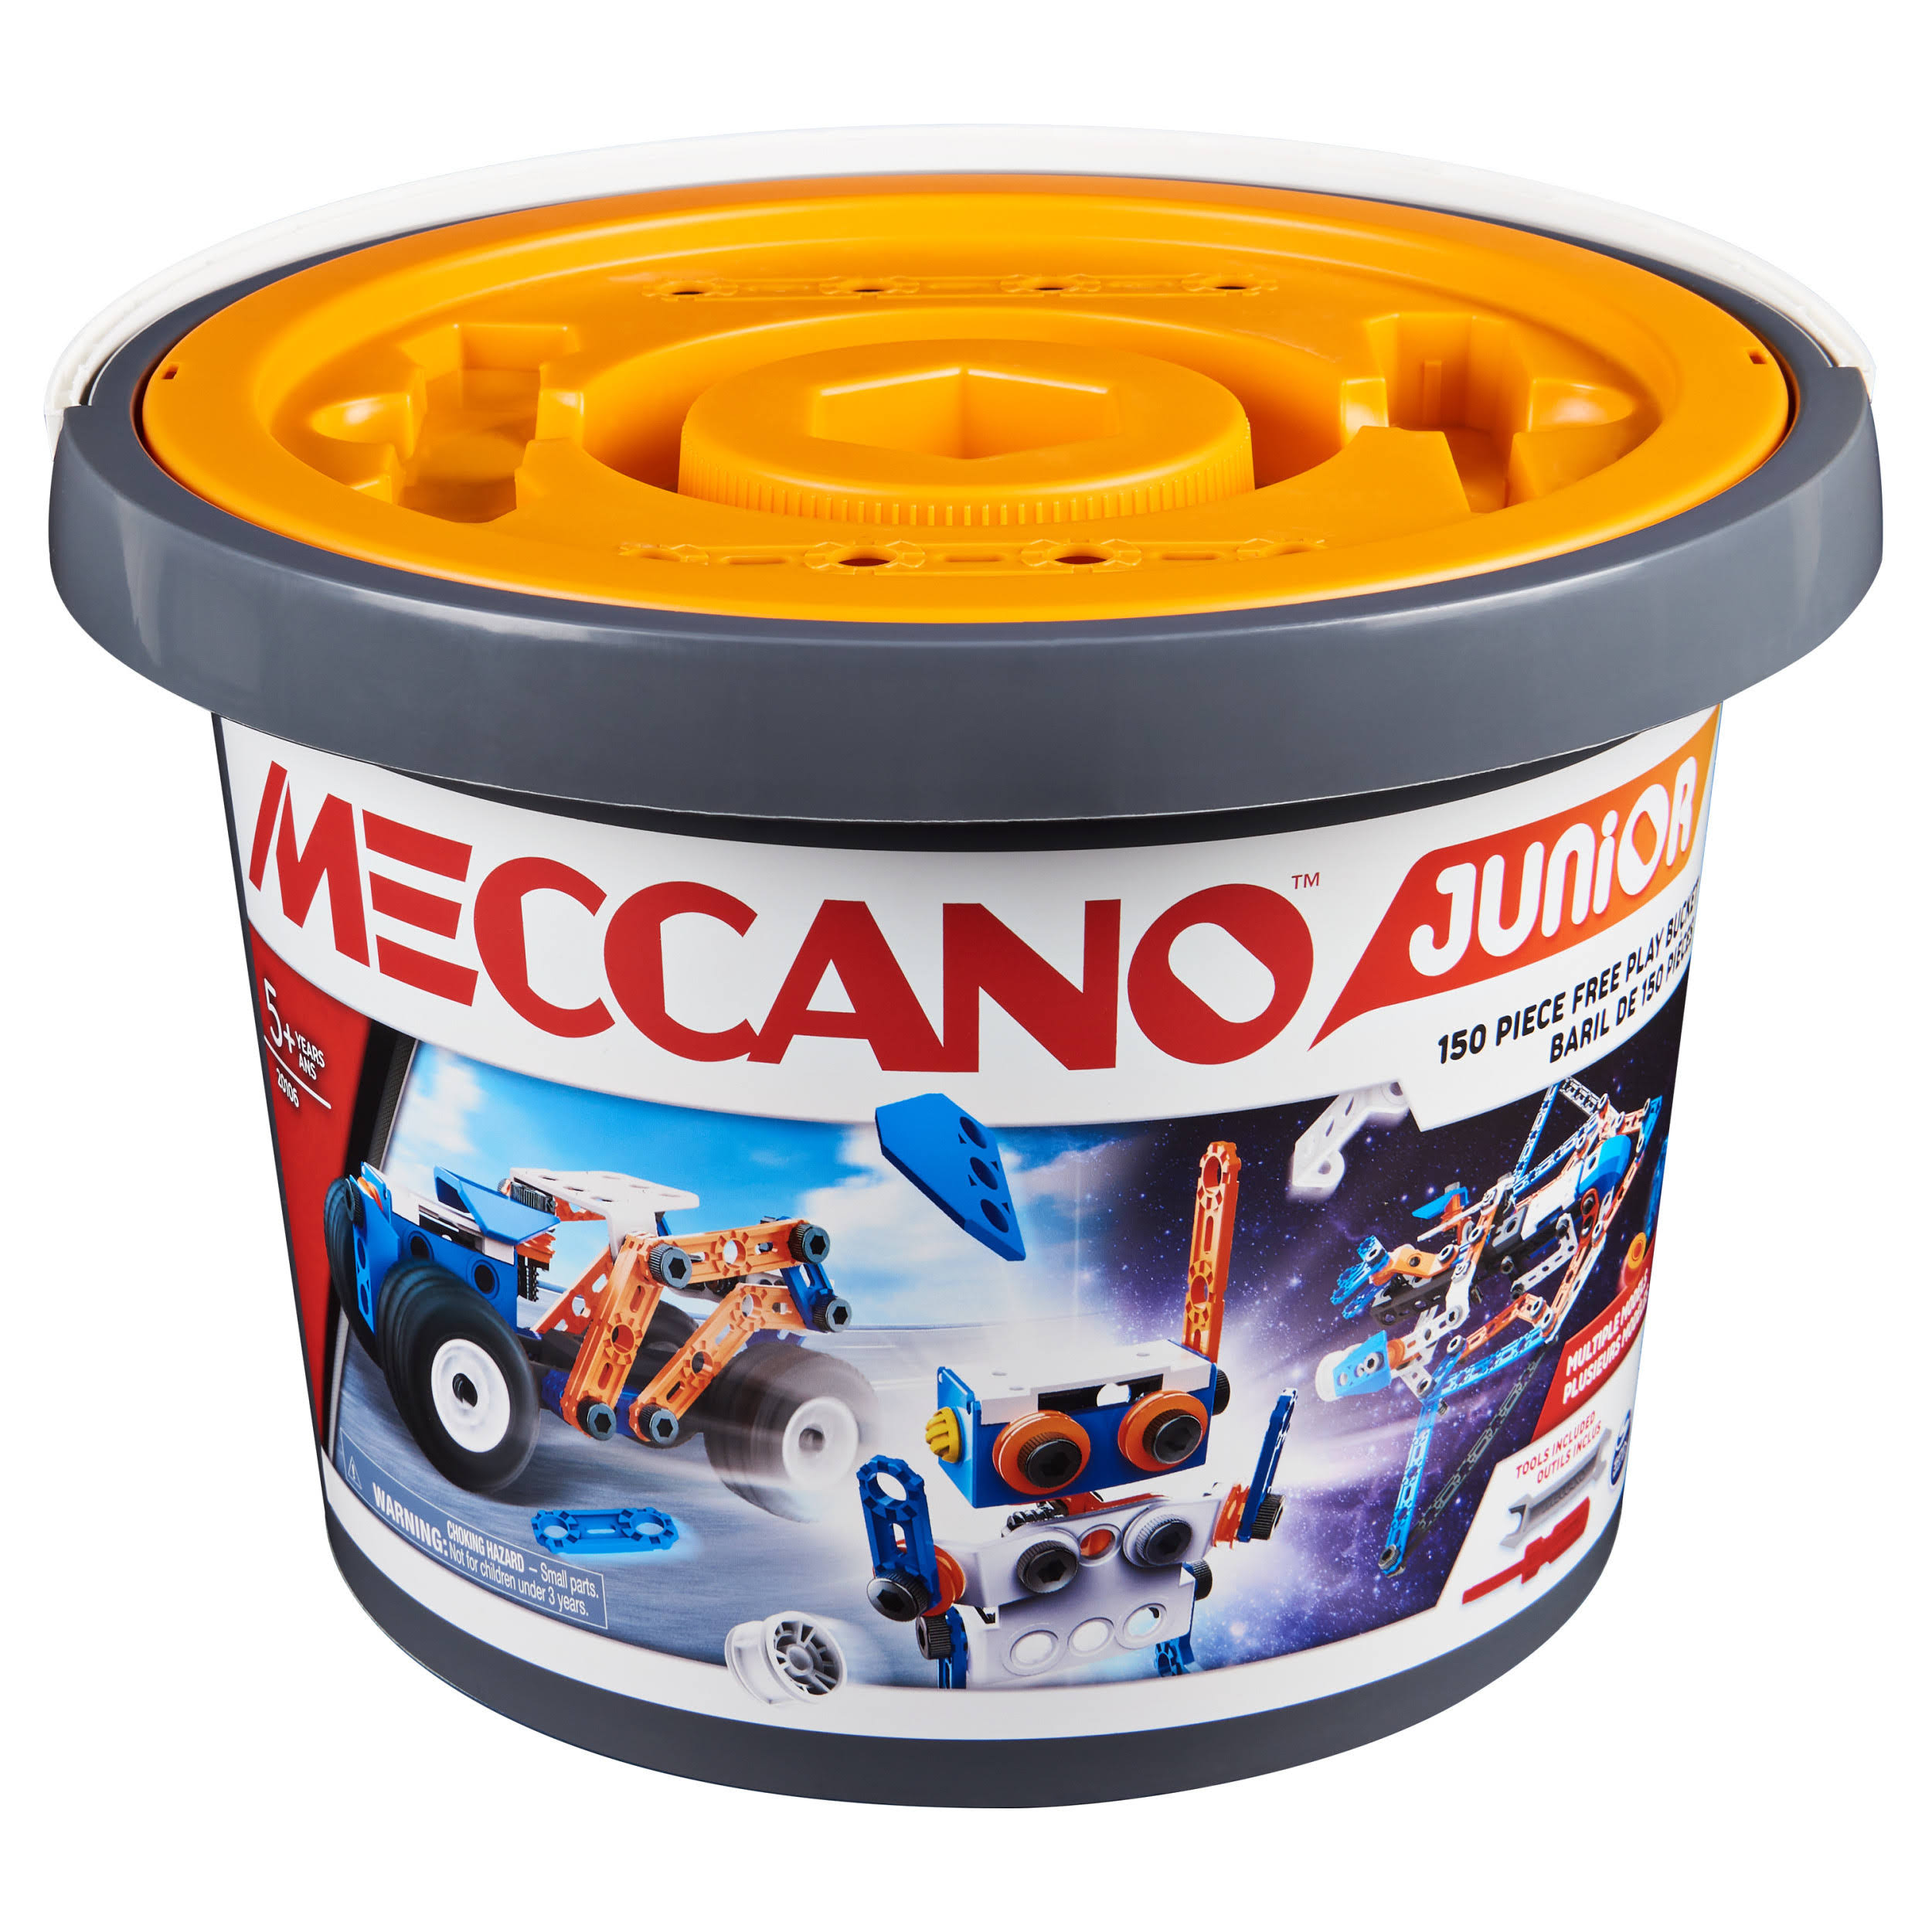 Meccano Junior 150-Piece Bucket Steam Model Building